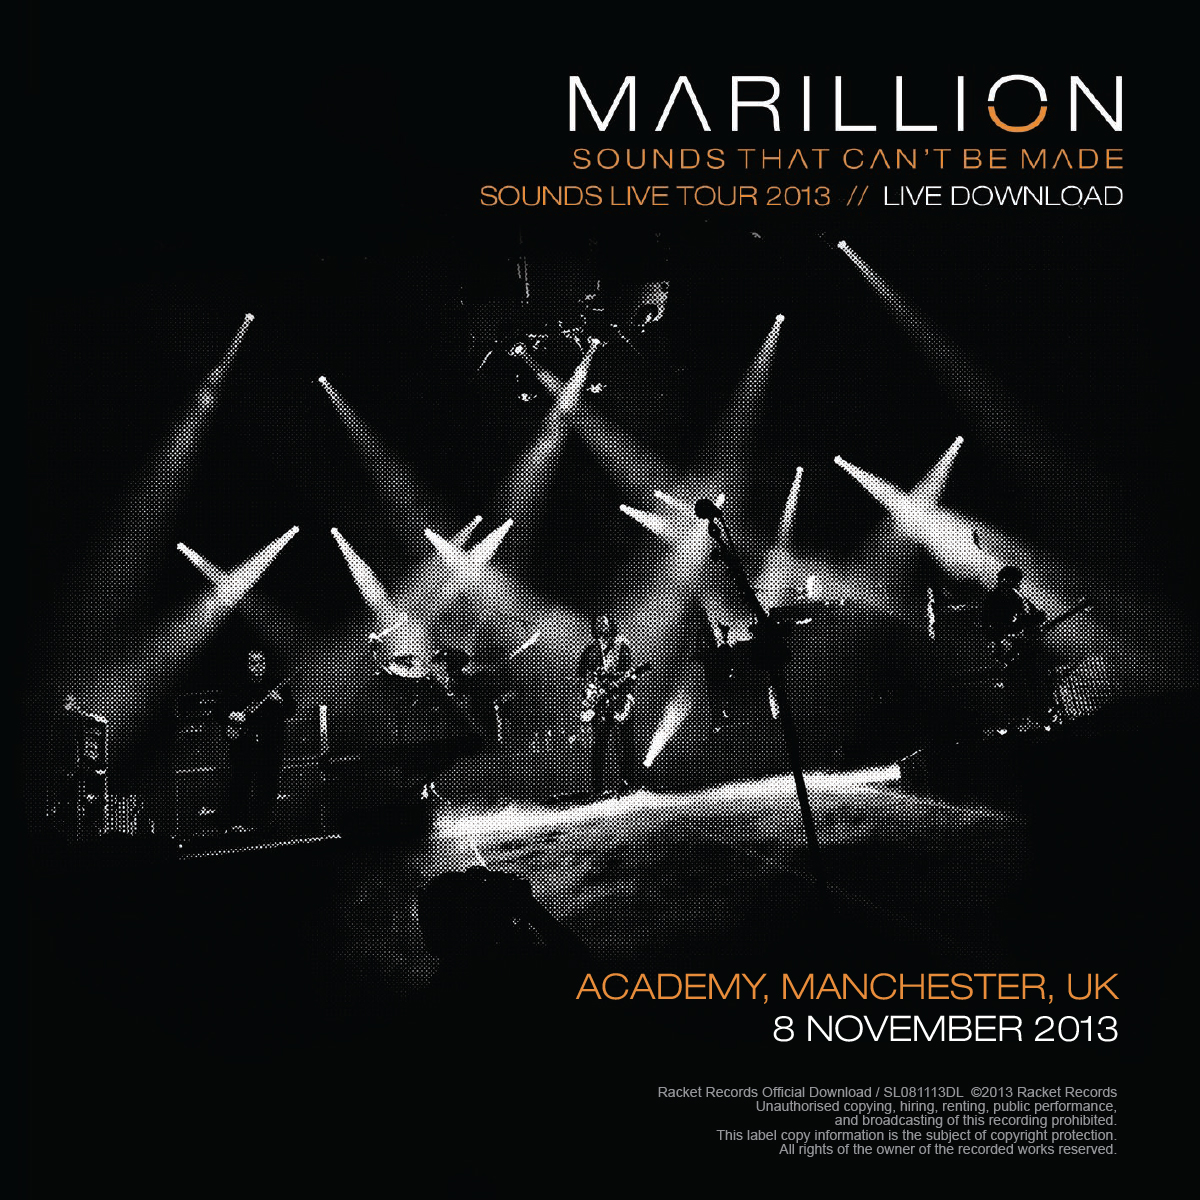 Academy, Manchester, UK<br>8th November 2013 Live Download 320kbps